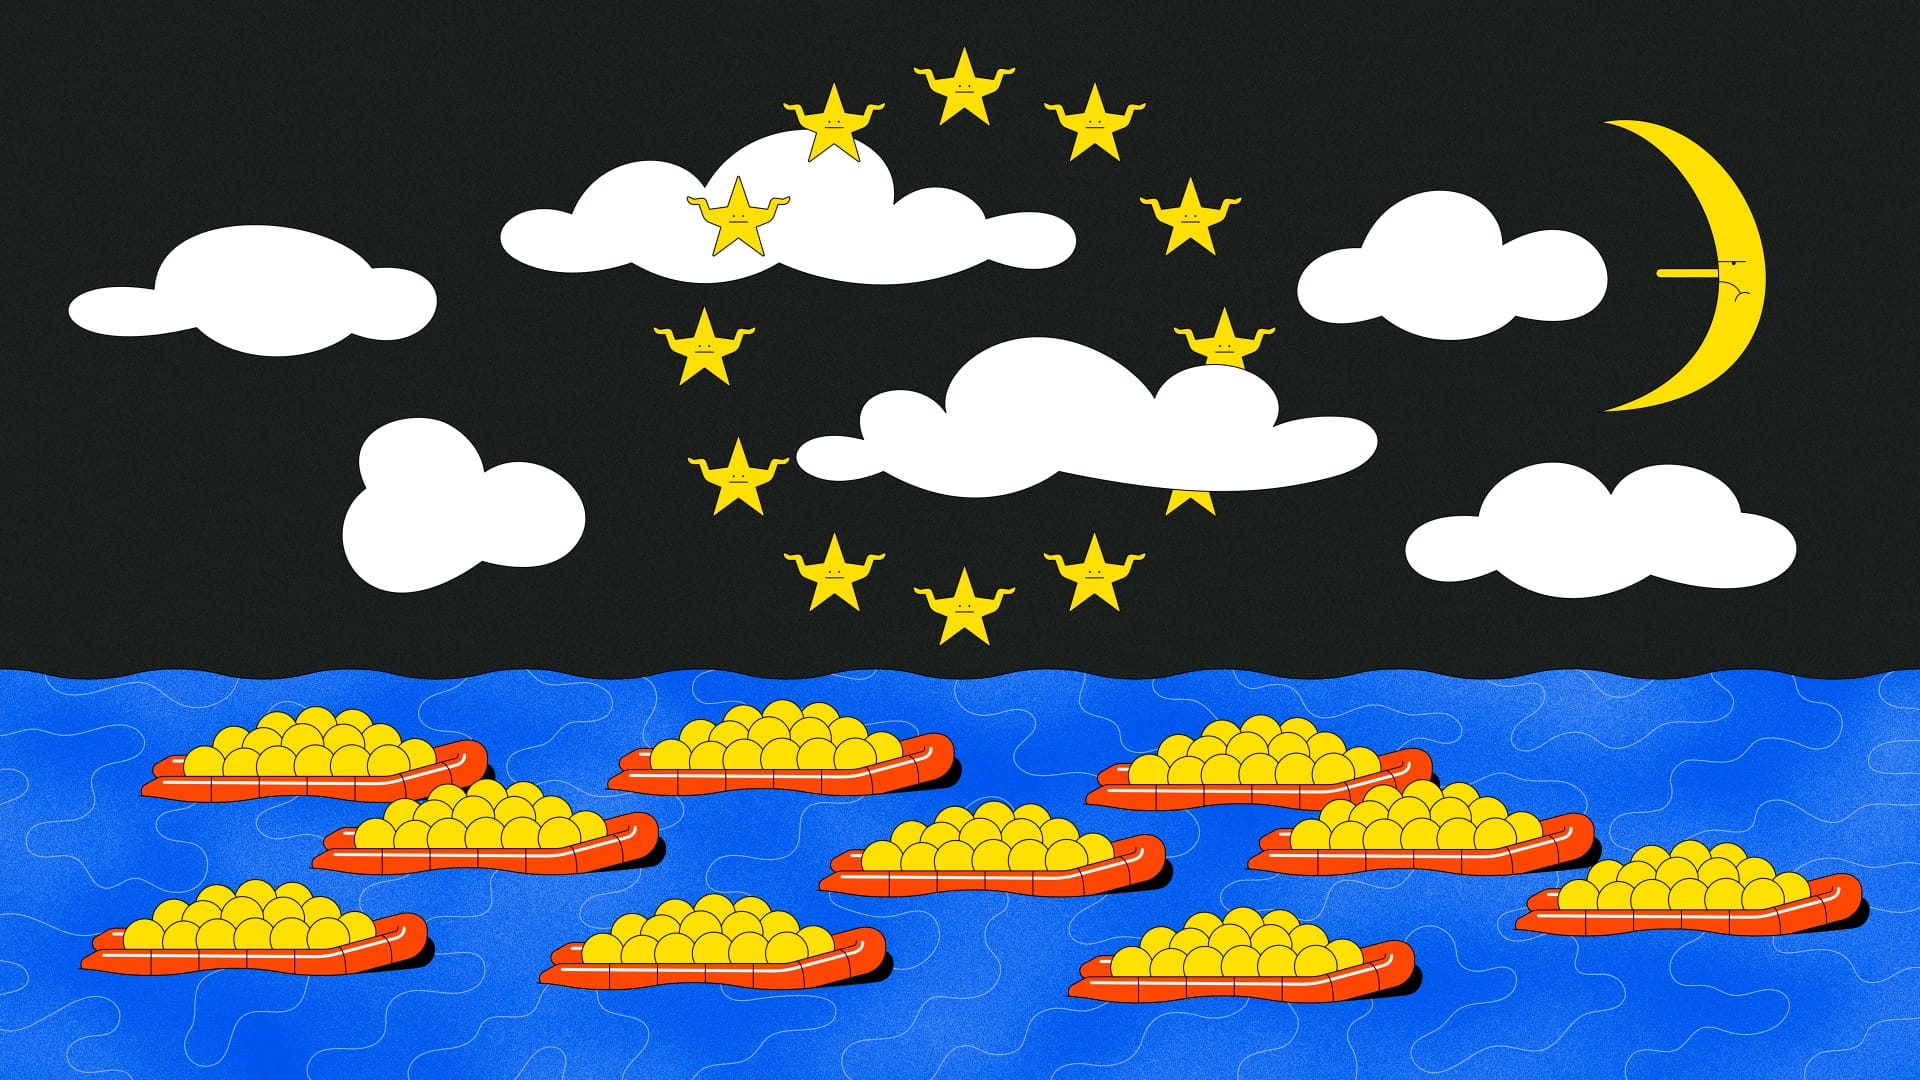 Een tekening van illustrator Roel van Eekelen met heldere kleuren van een zee vol rode reddingbootjes met gele balletjes erin. In een zwarte lucht halen sterretjes-poppetjes hun schouders op terwijl ze een cirkel vormen als op de Europese vlag. De maan trekt een nors gezicht. 